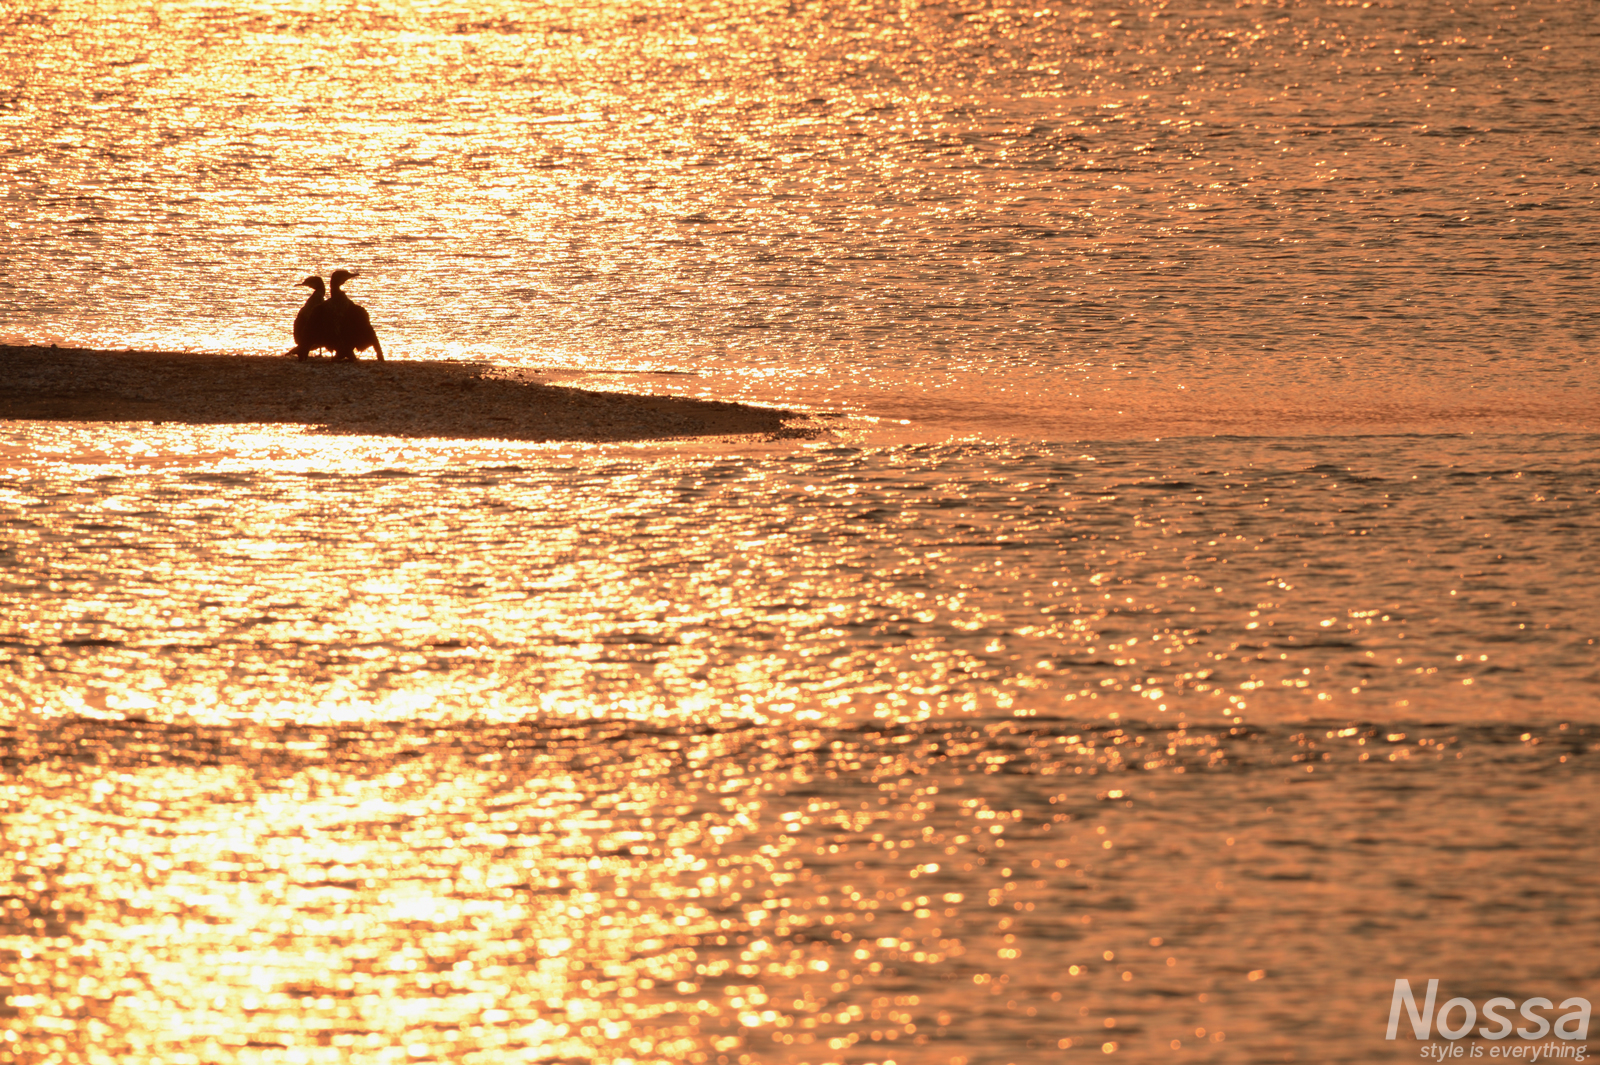 鵜・穏やかな水面…浜名湖弁天島周辺の日の出風景を撮影してきた